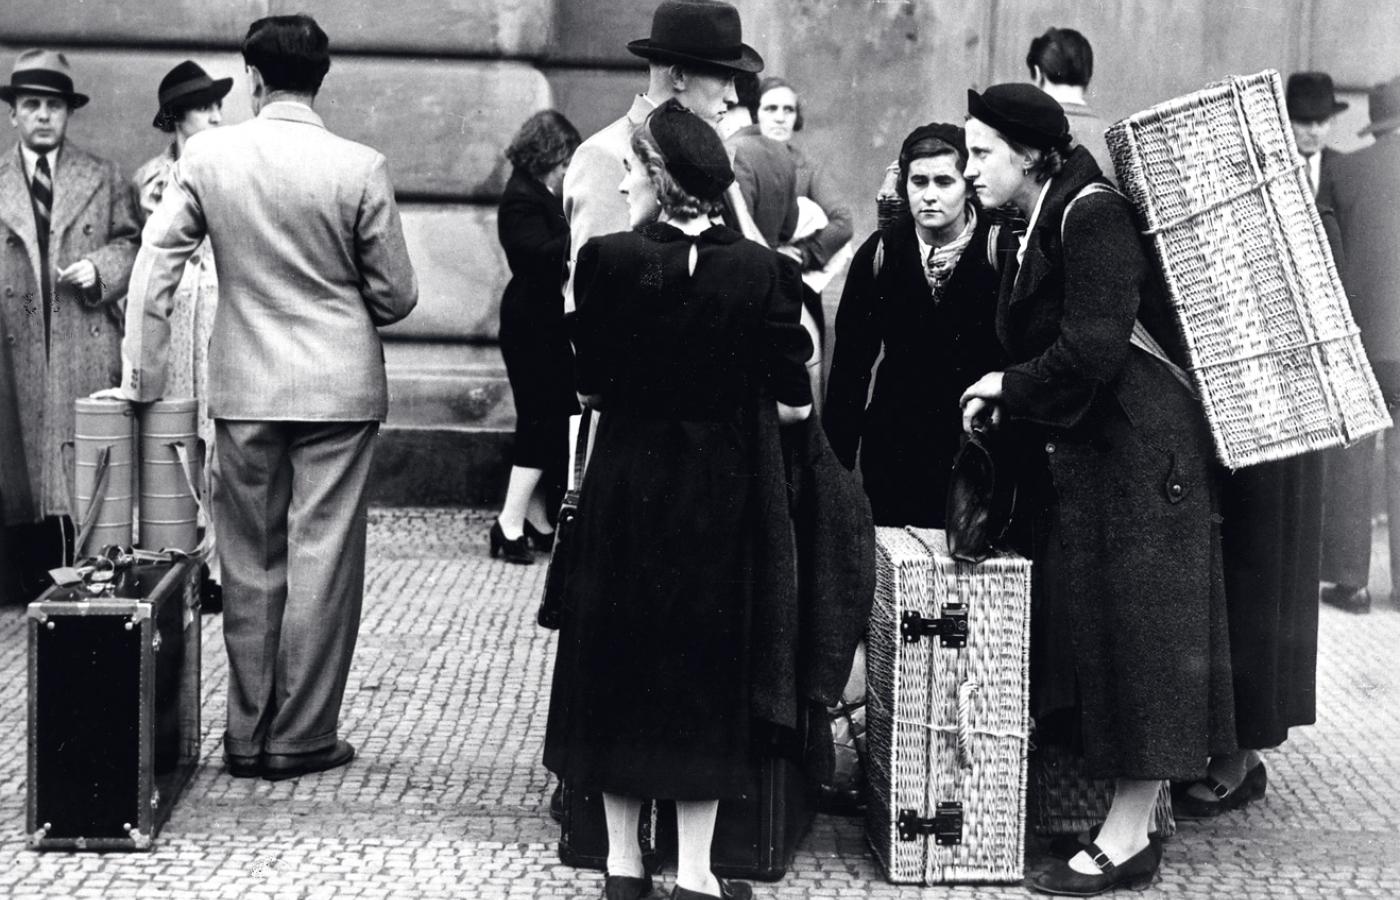 Grupa emigrujących z Niemiec Żydów, lata 30.